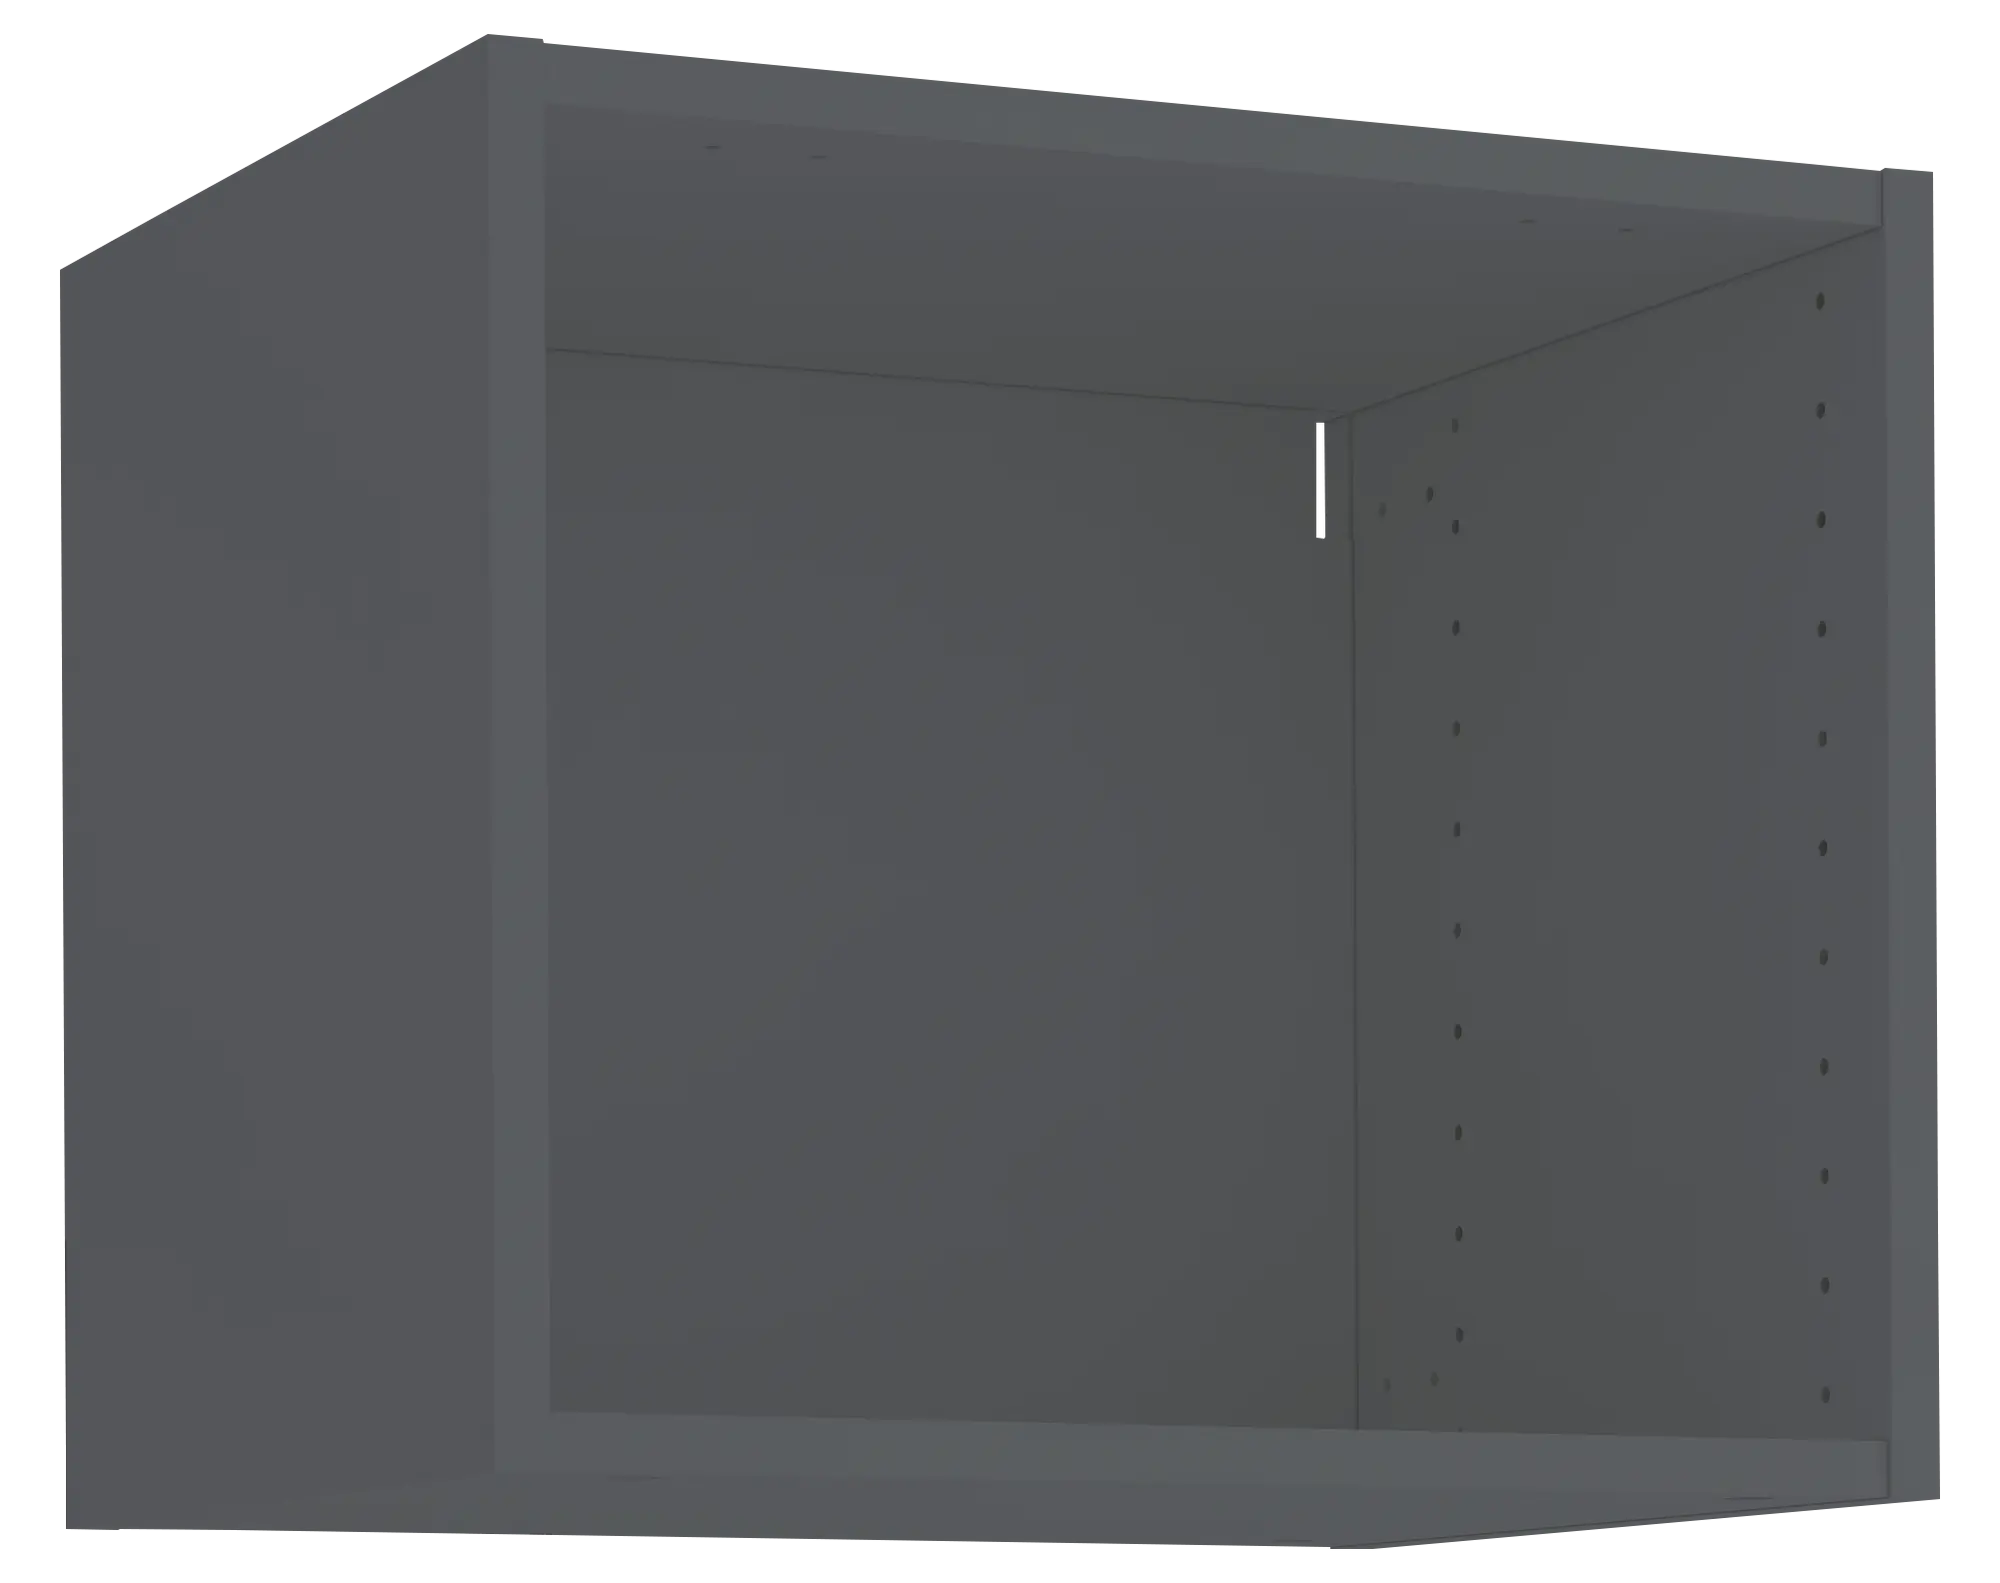 Mueble alto cocina blanco DELINIA ID 90x38,4 cm